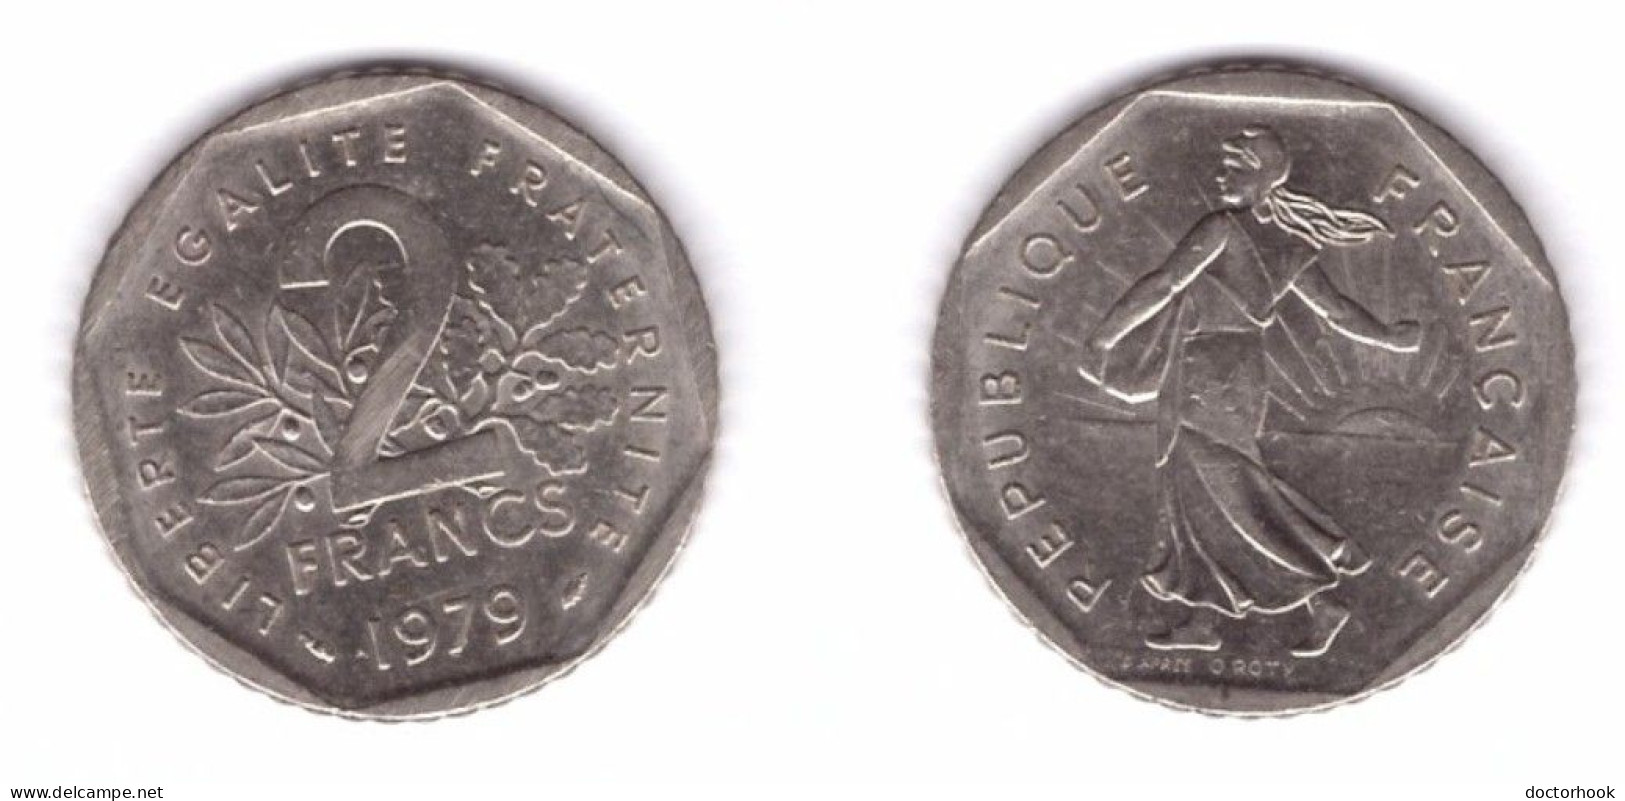 FRANCE   2 FRANCS 1979 (KM # 942.1) #7397 - 2 Francs